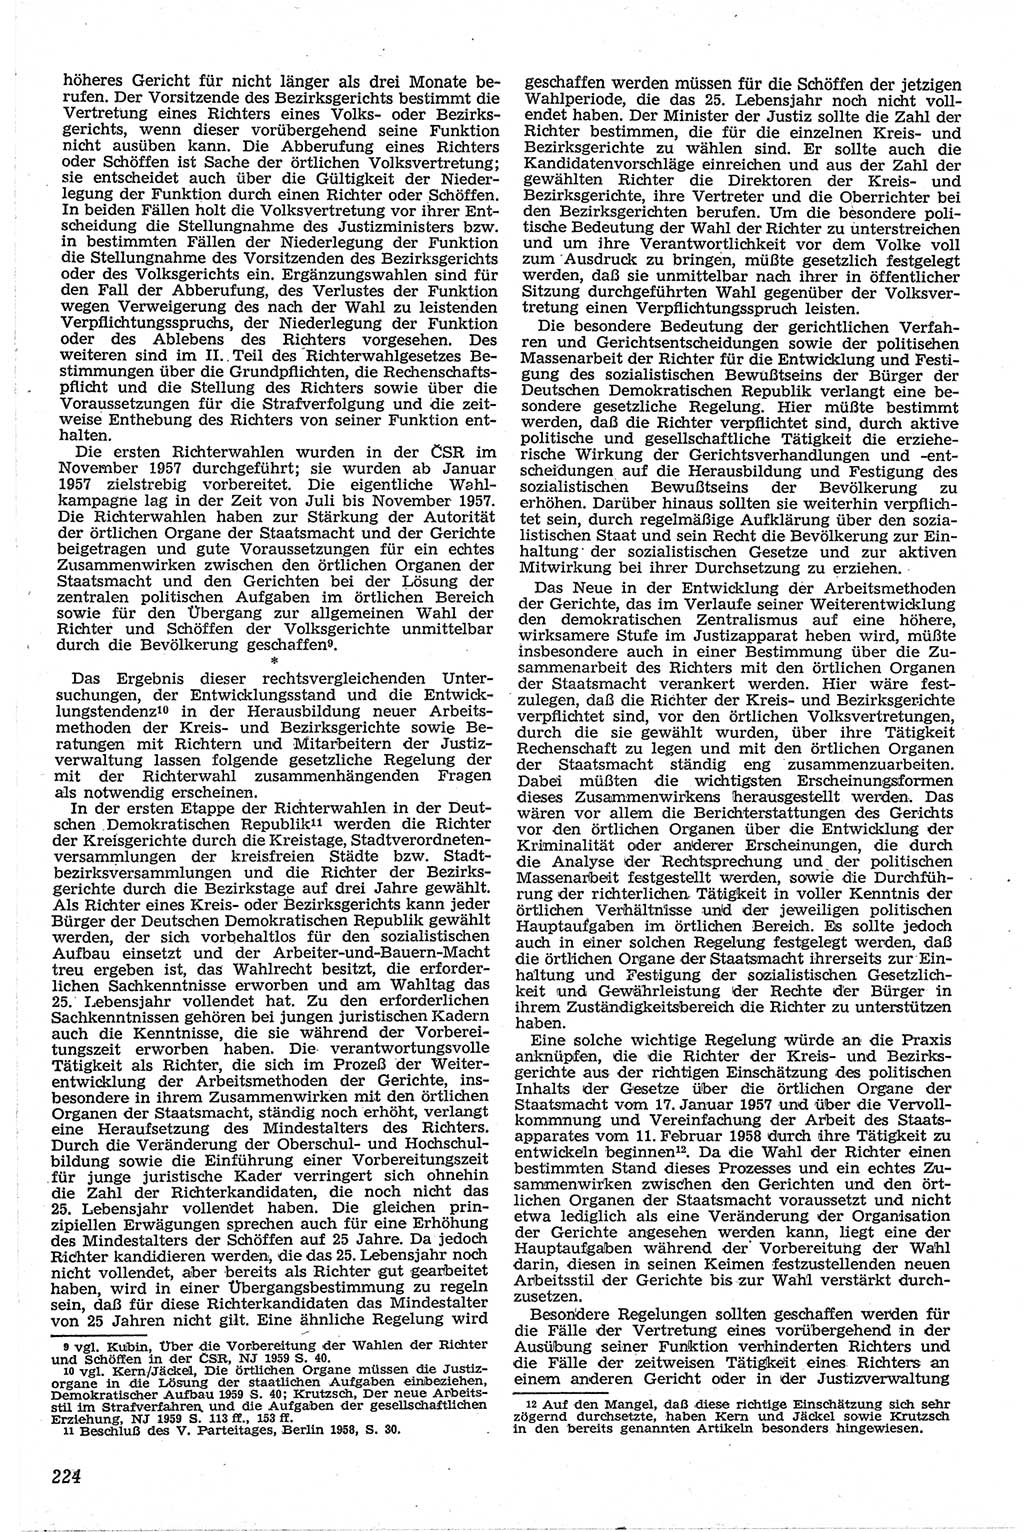 Neue Justiz (NJ), Zeitschrift für Recht und Rechtswissenschaft [Deutsche Demokratische Republik (DDR)], 13. Jahrgang 1959, Seite 224 (NJ DDR 1959, S. 224)